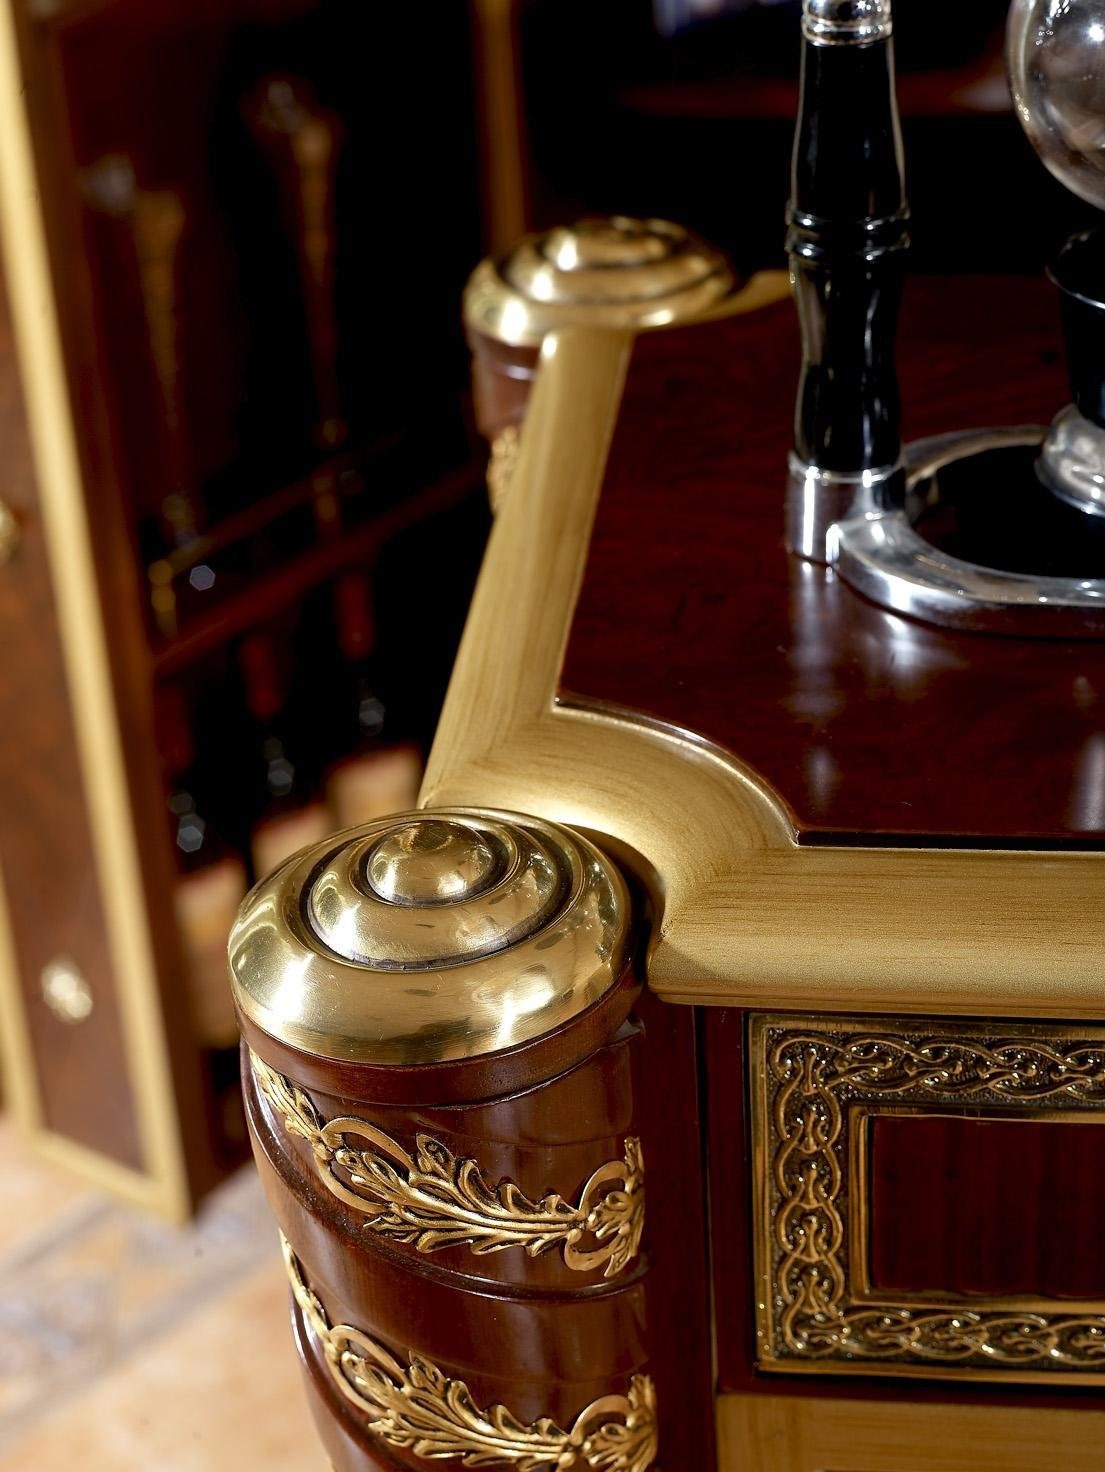 Echtholz JVmoebel Beistelltisch, Serviertisch Beistelltisch Tisch Luxus Antik Klasse Stil